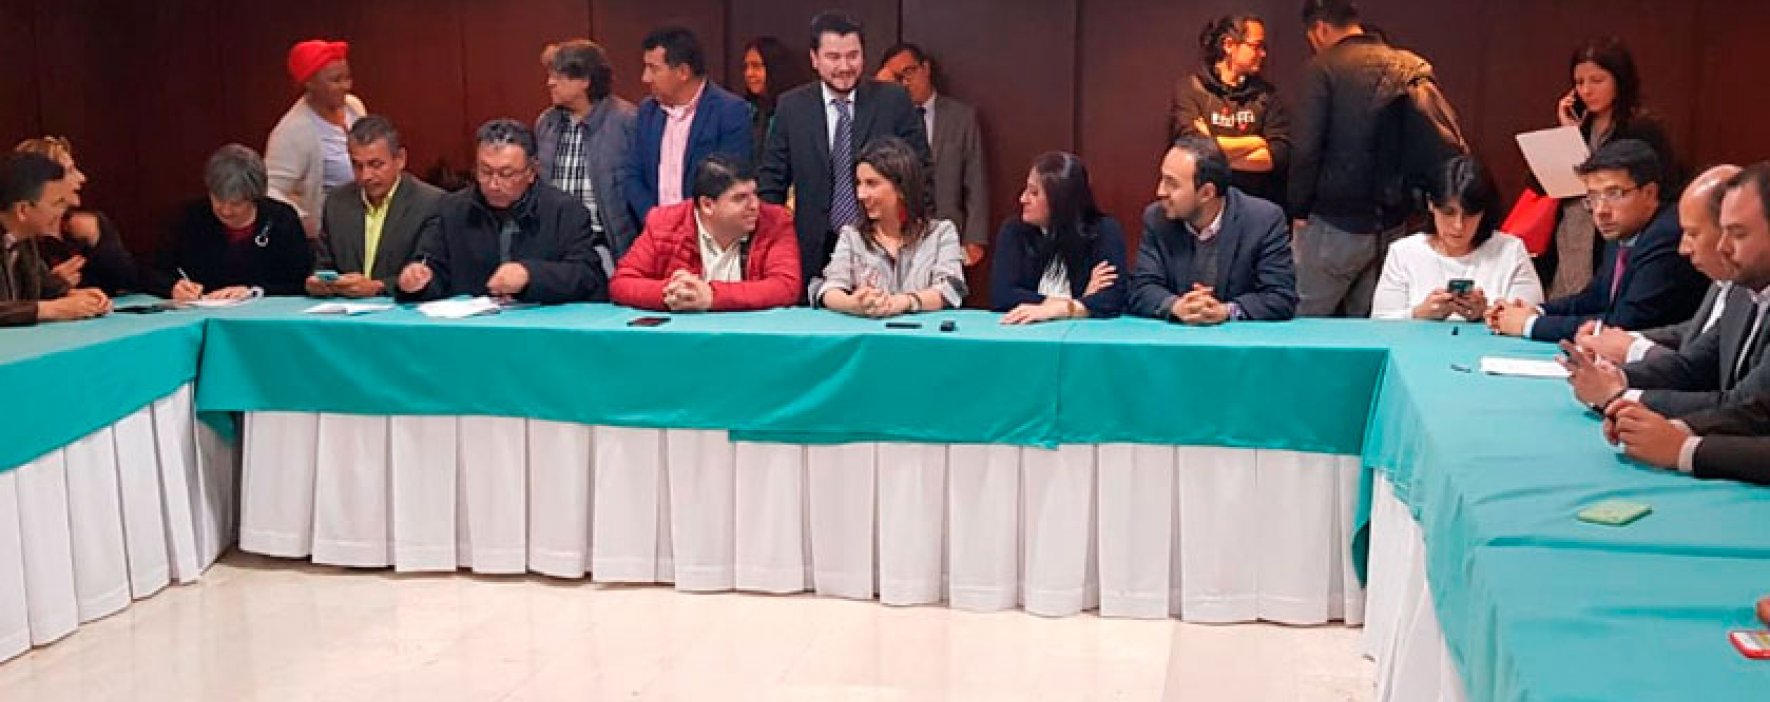 Se firman acuerdos significativos para la educación con el magisterio colombiano